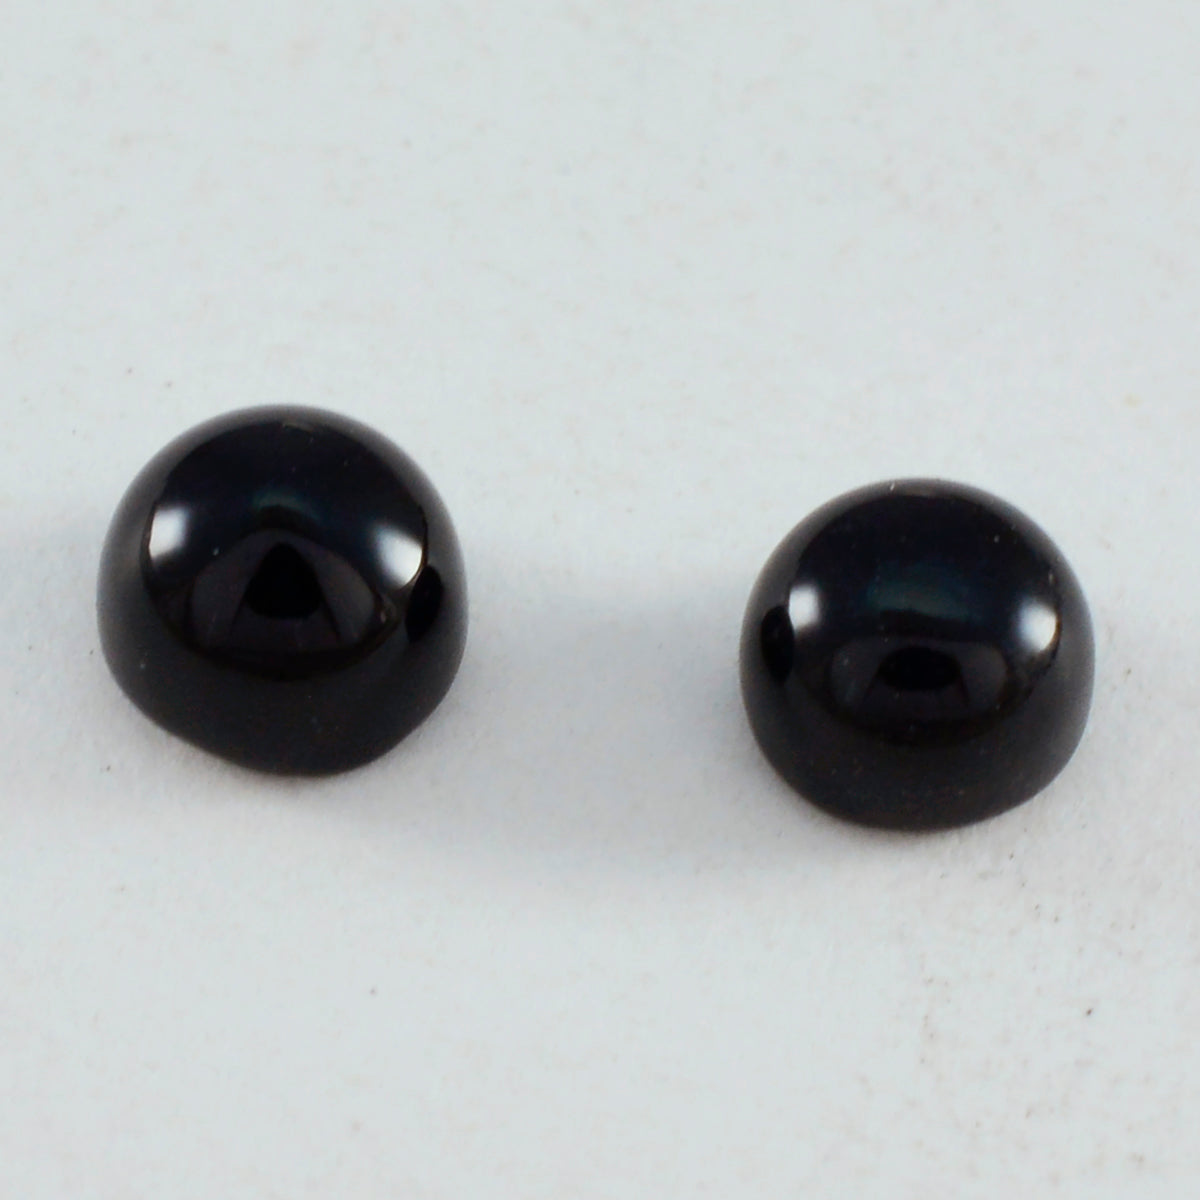 Riyogems 1pc cabochon onyx noir 7x7mm forme ronde bonne qualité gemme